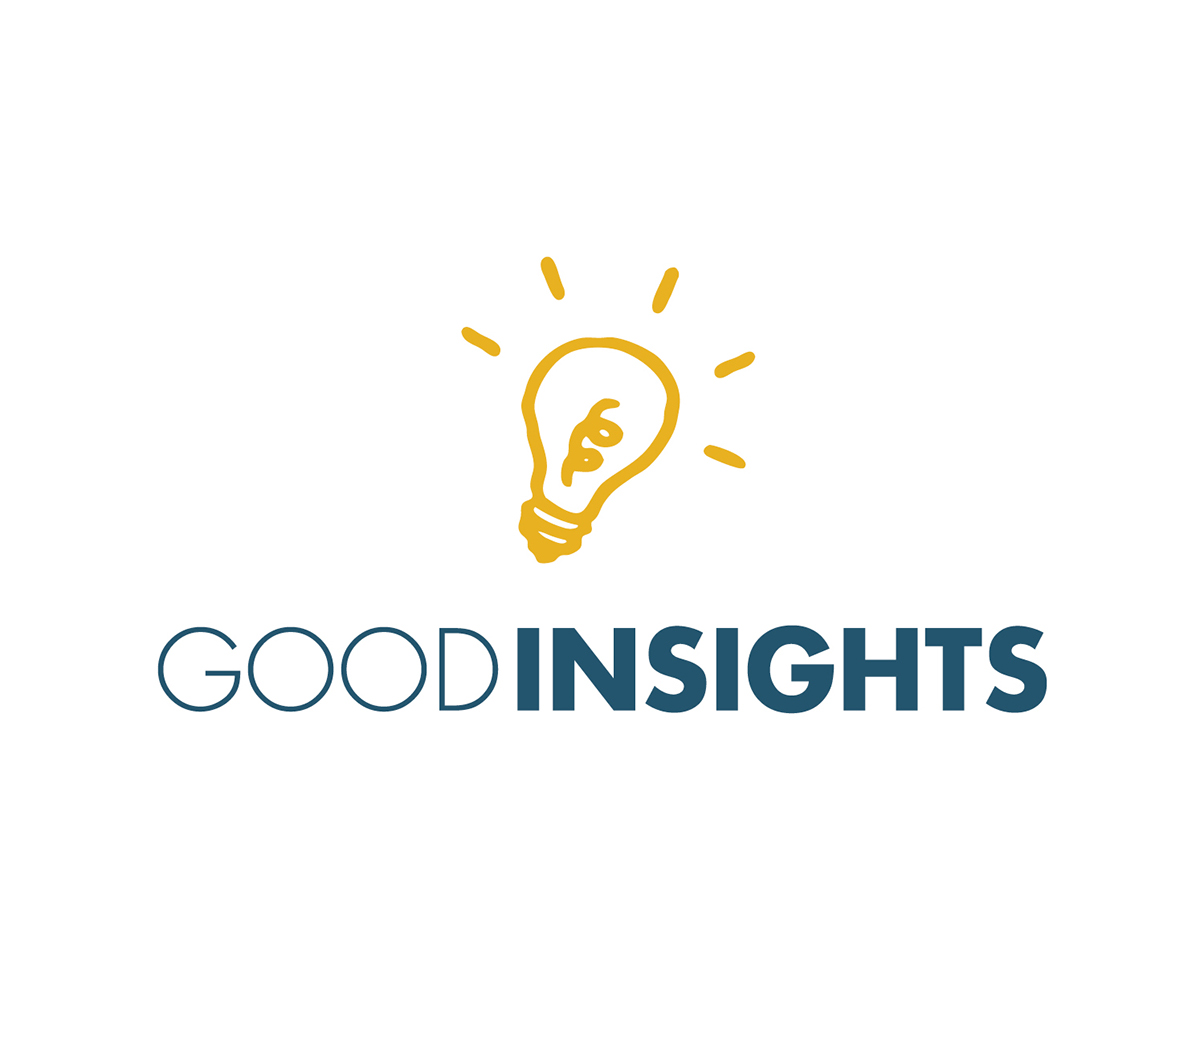 Good Insights logo Logo Design letter letterhead system